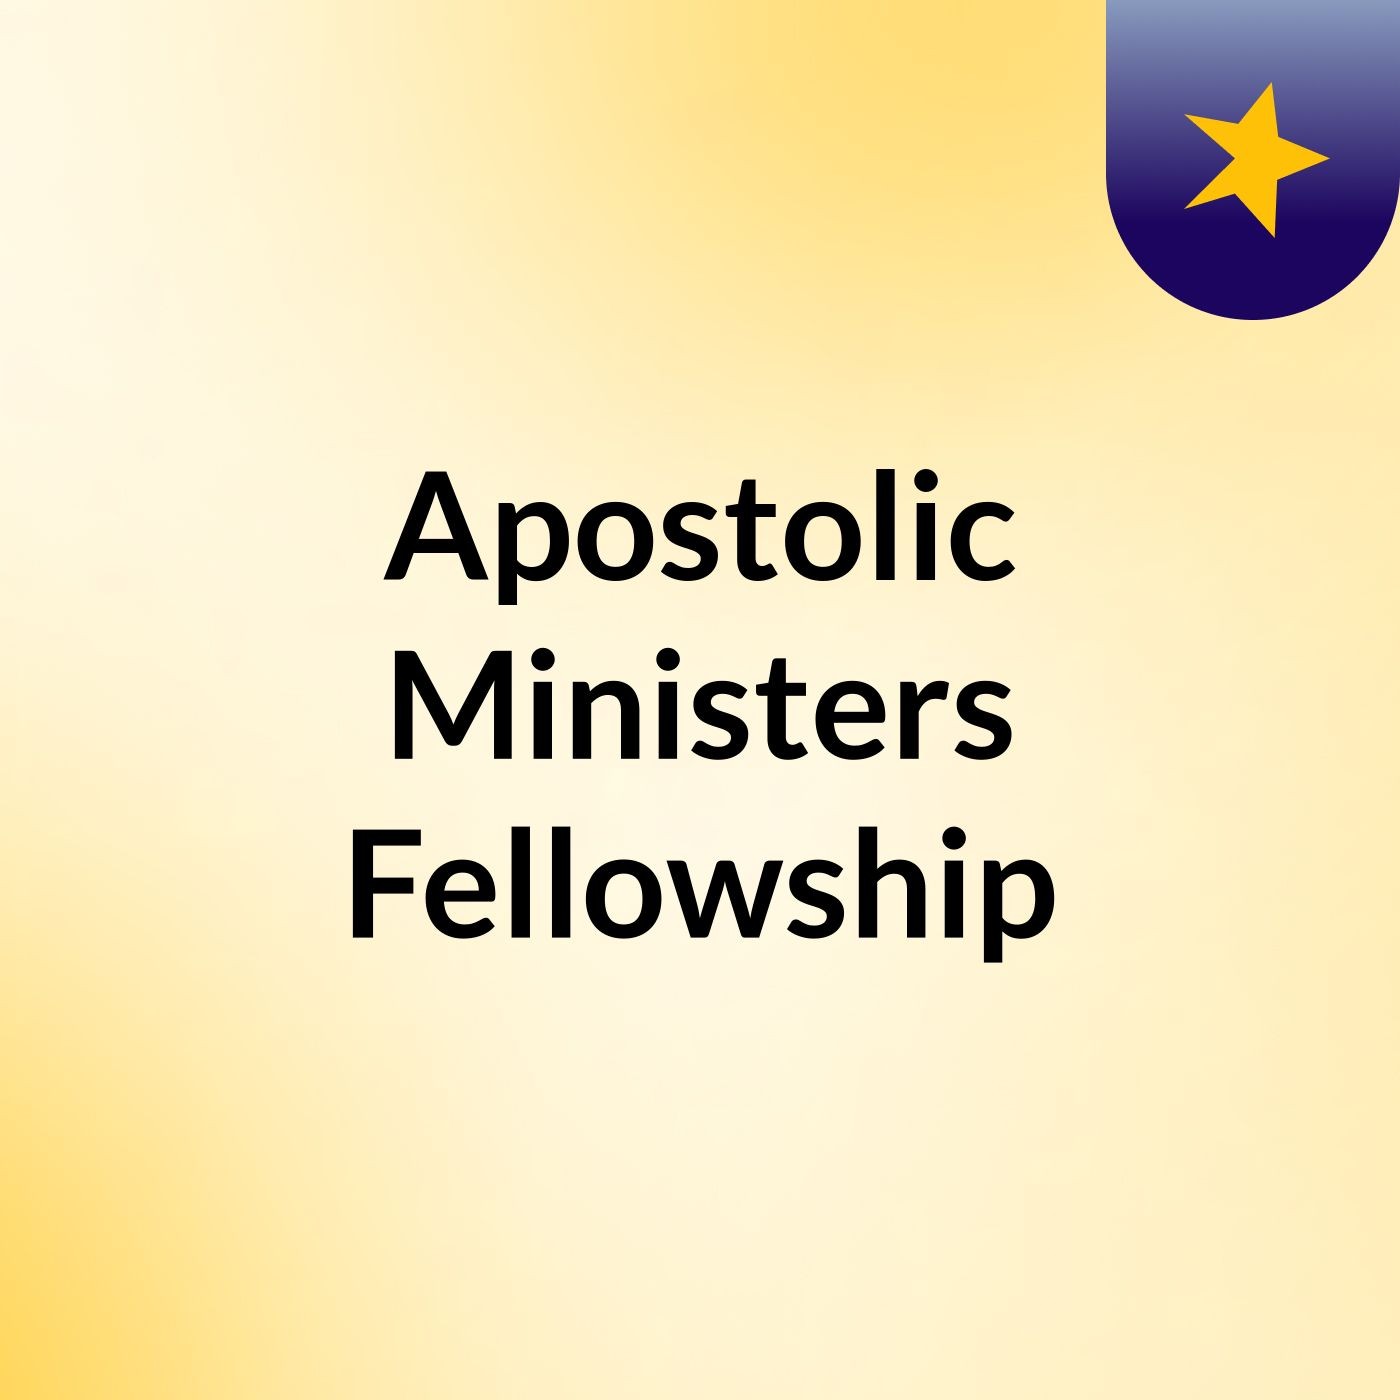 Apostolic Ministers Fellowship: